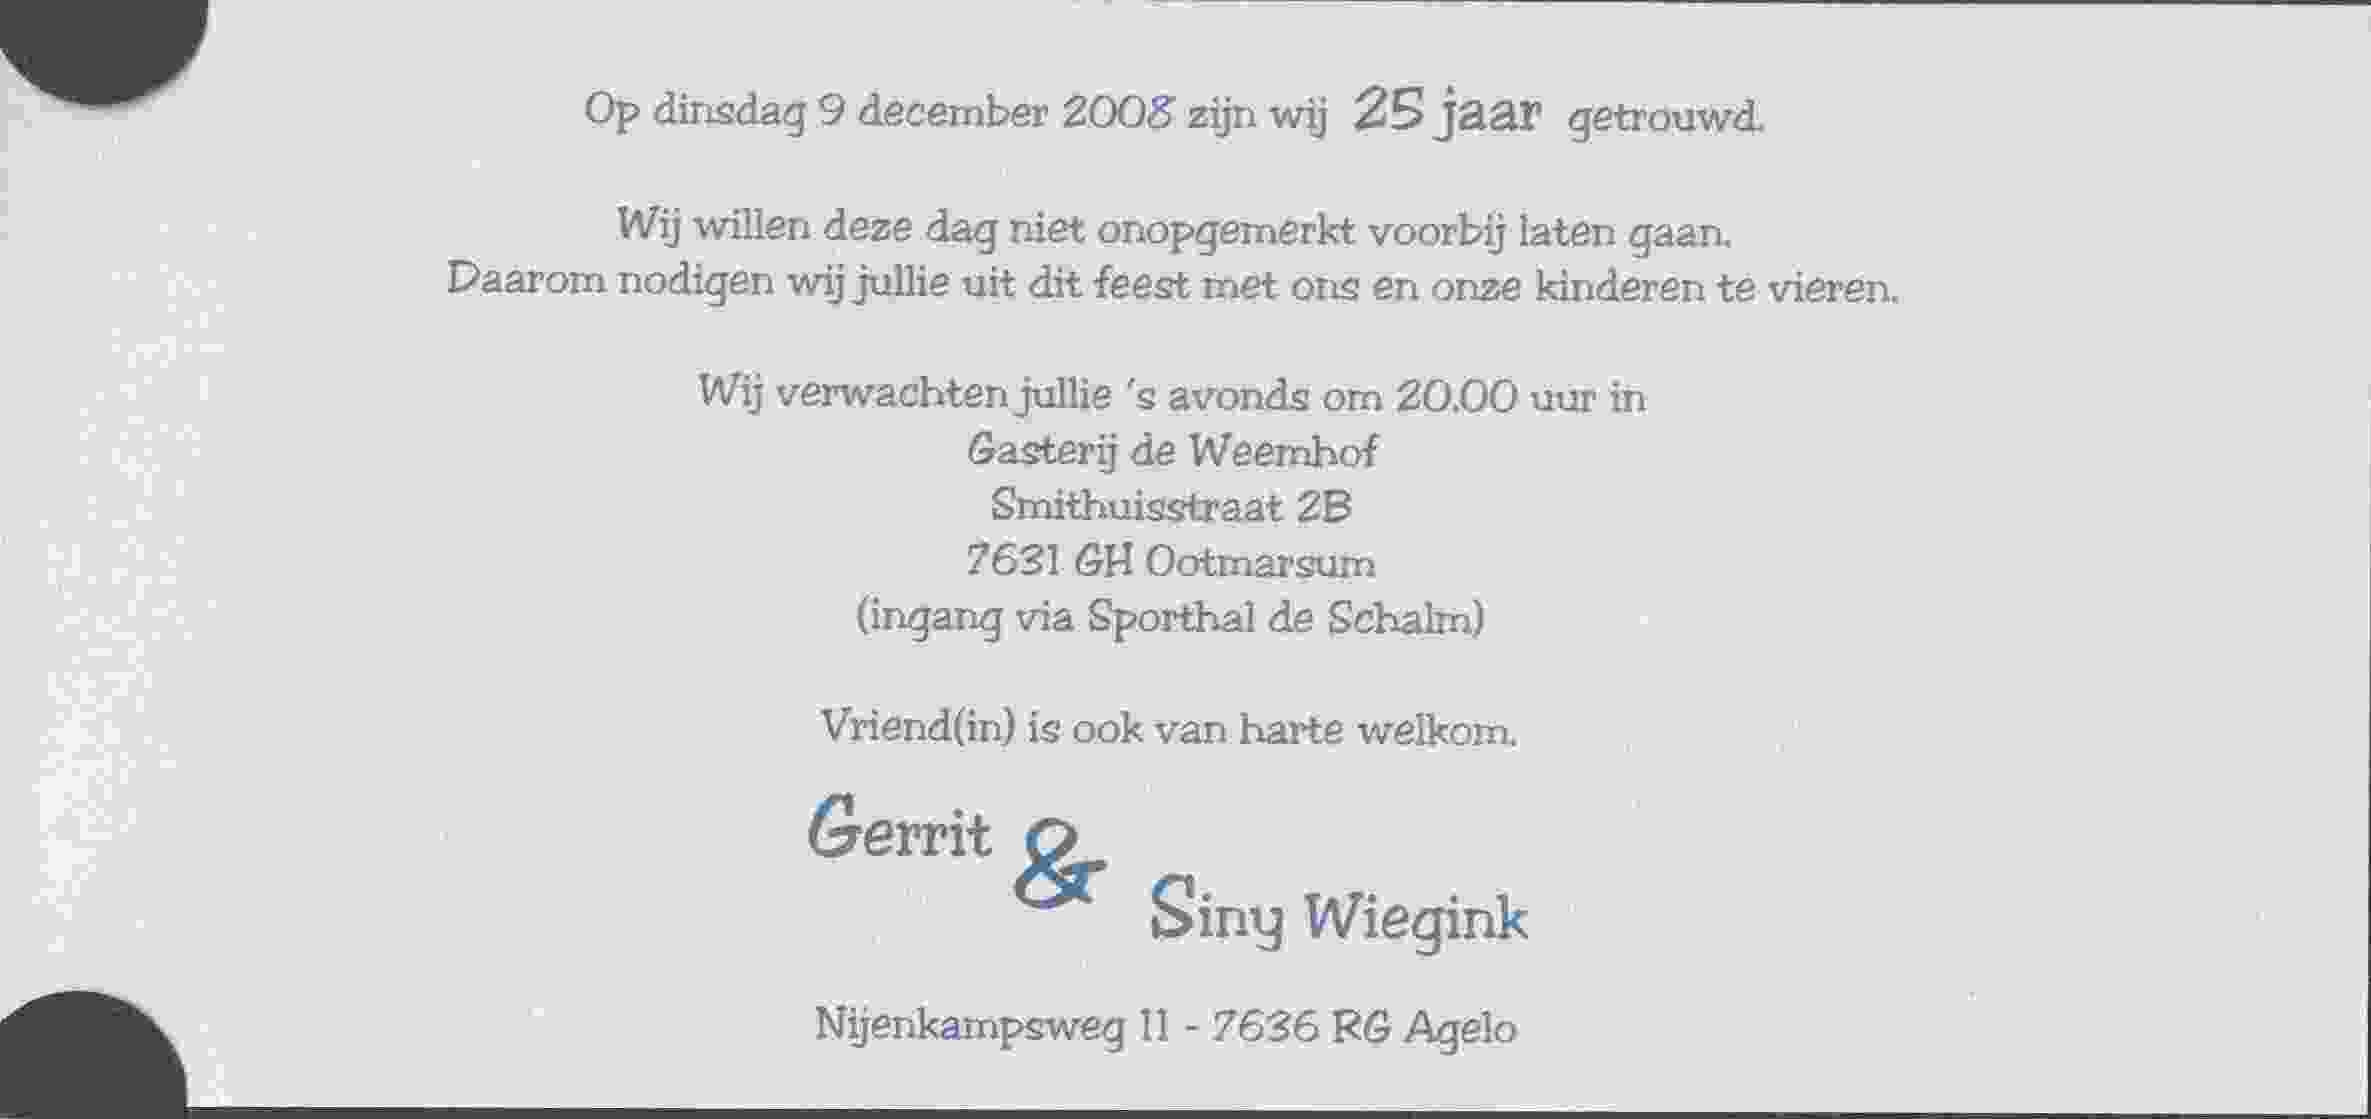 Gerrit en Siny Wiegink zijn 25 jaar getrouwd op 2008-12-09